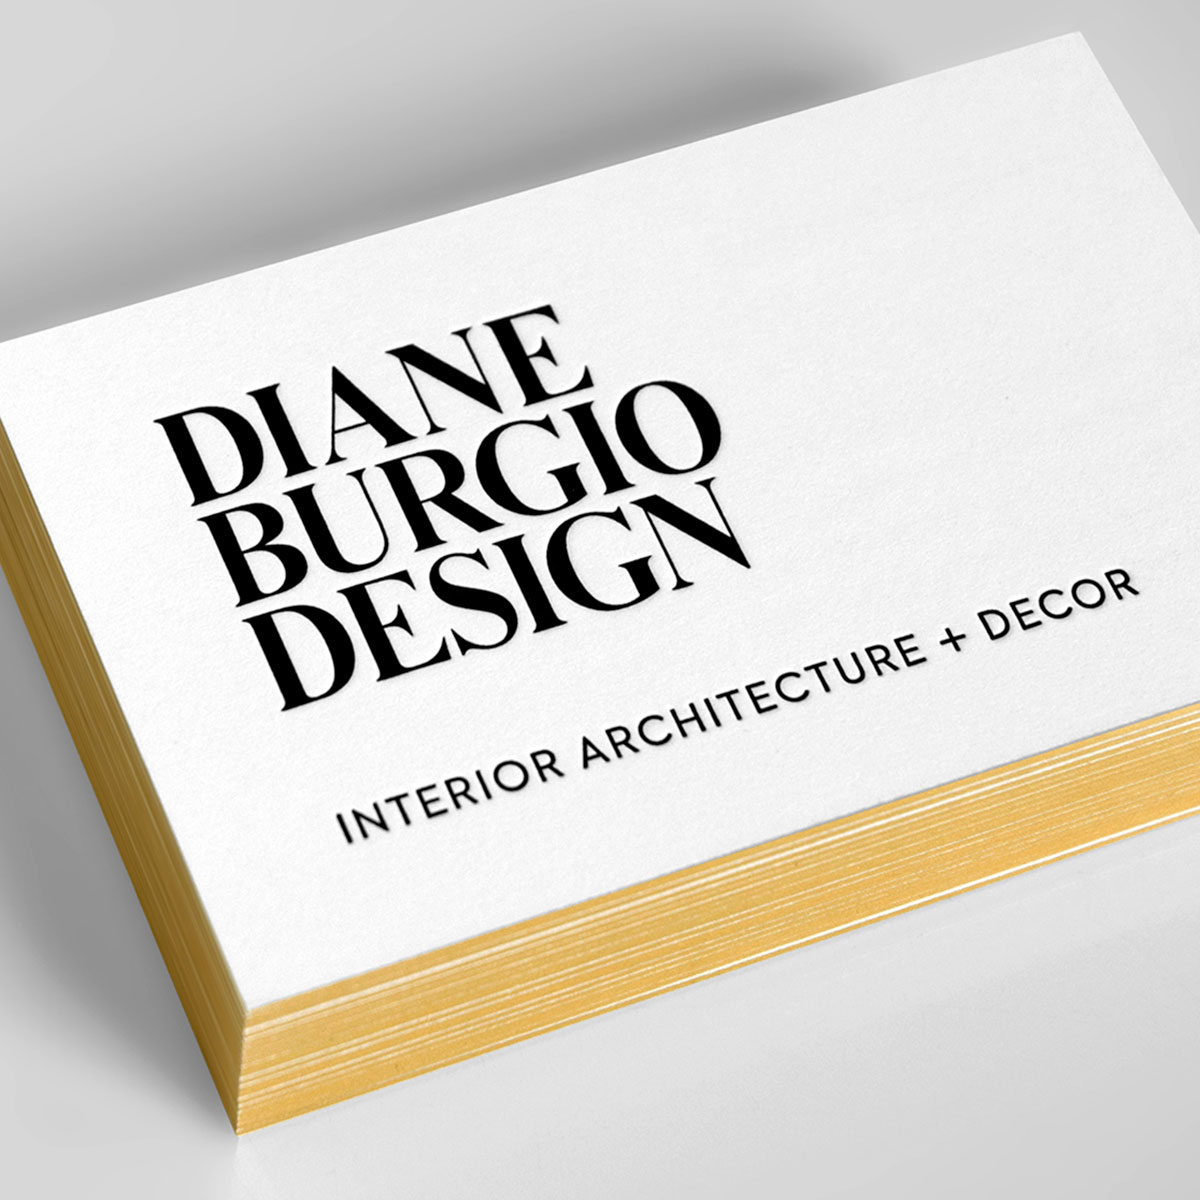 Diane Burgio Design Logo